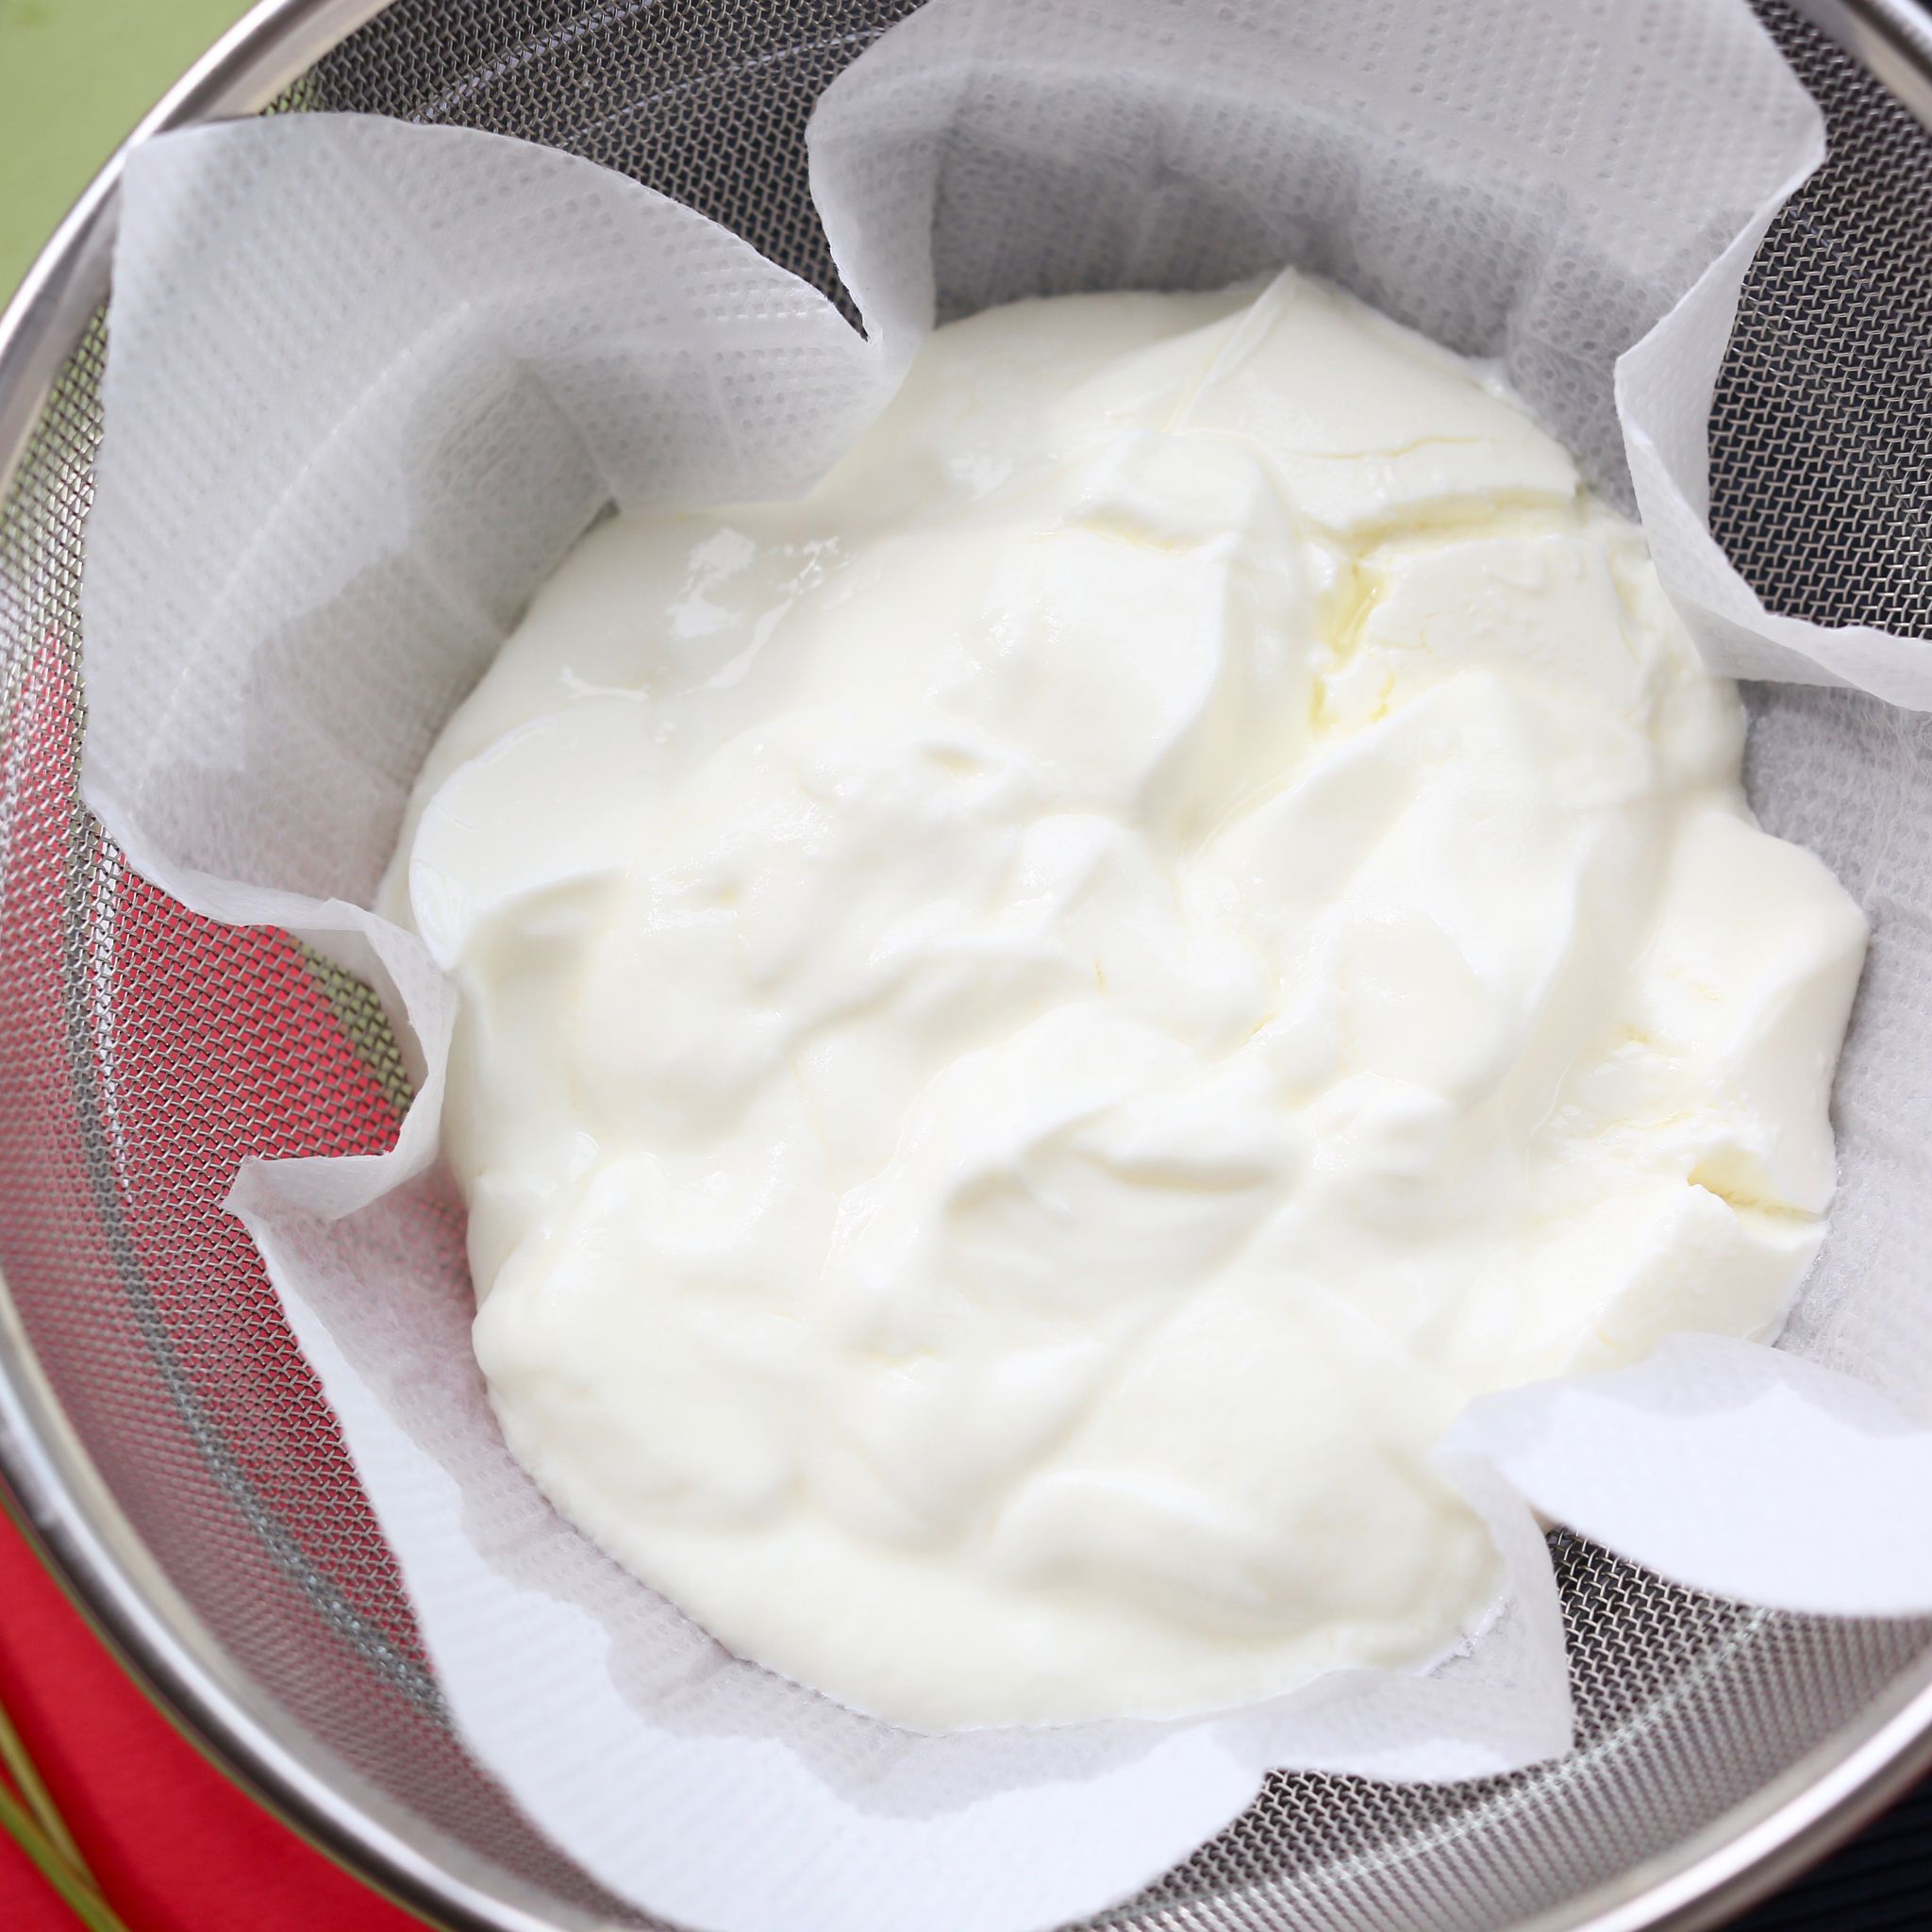 水切りヨーグルトの作り方 水切りする方法2パターンとおすすめレシピ やまでら くみこ のレシピ